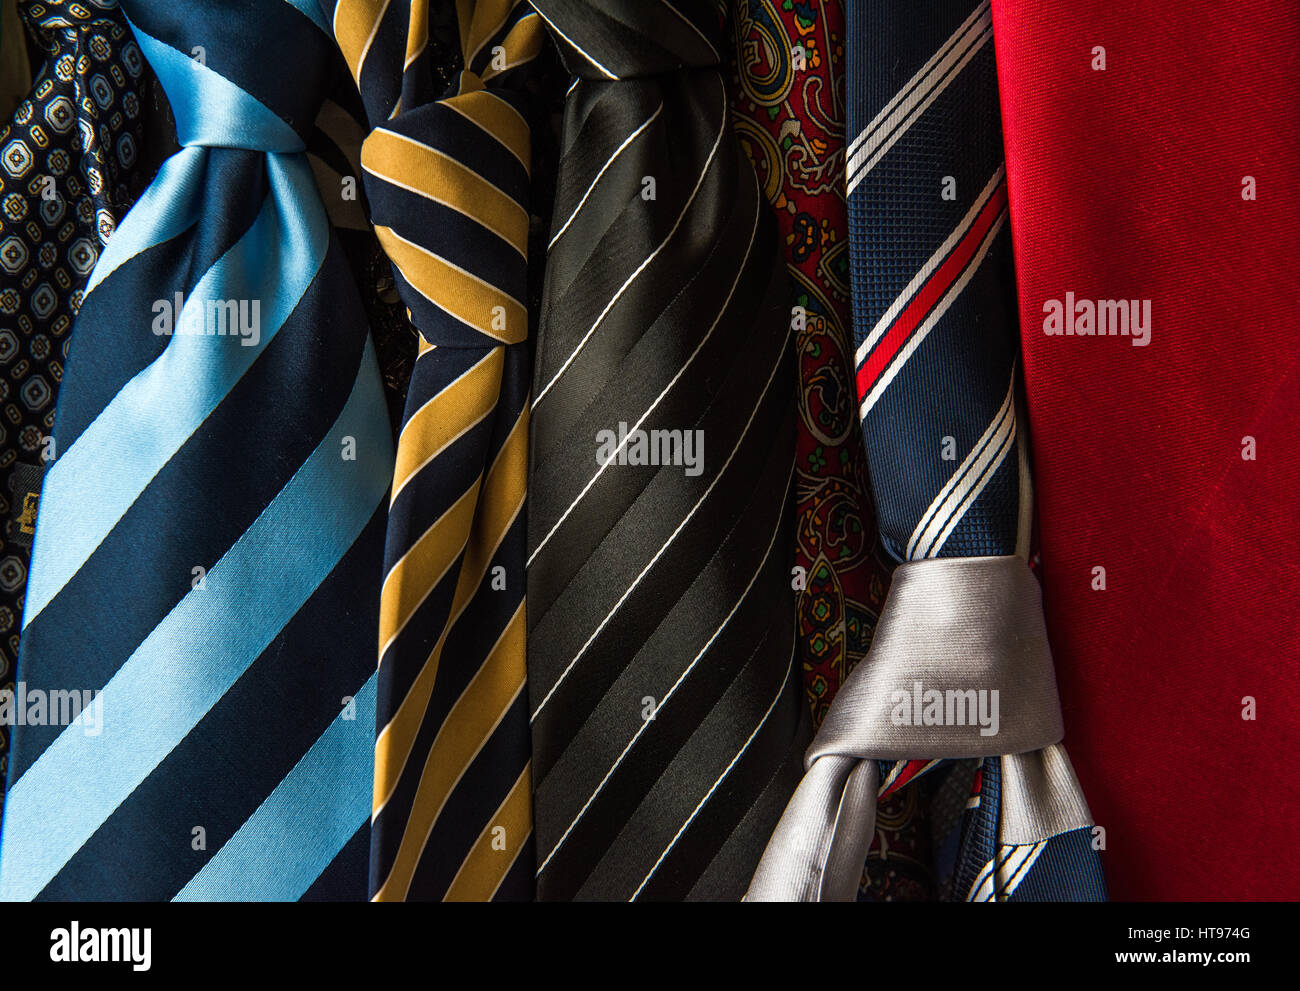 accessories for men: ties Stock Photo